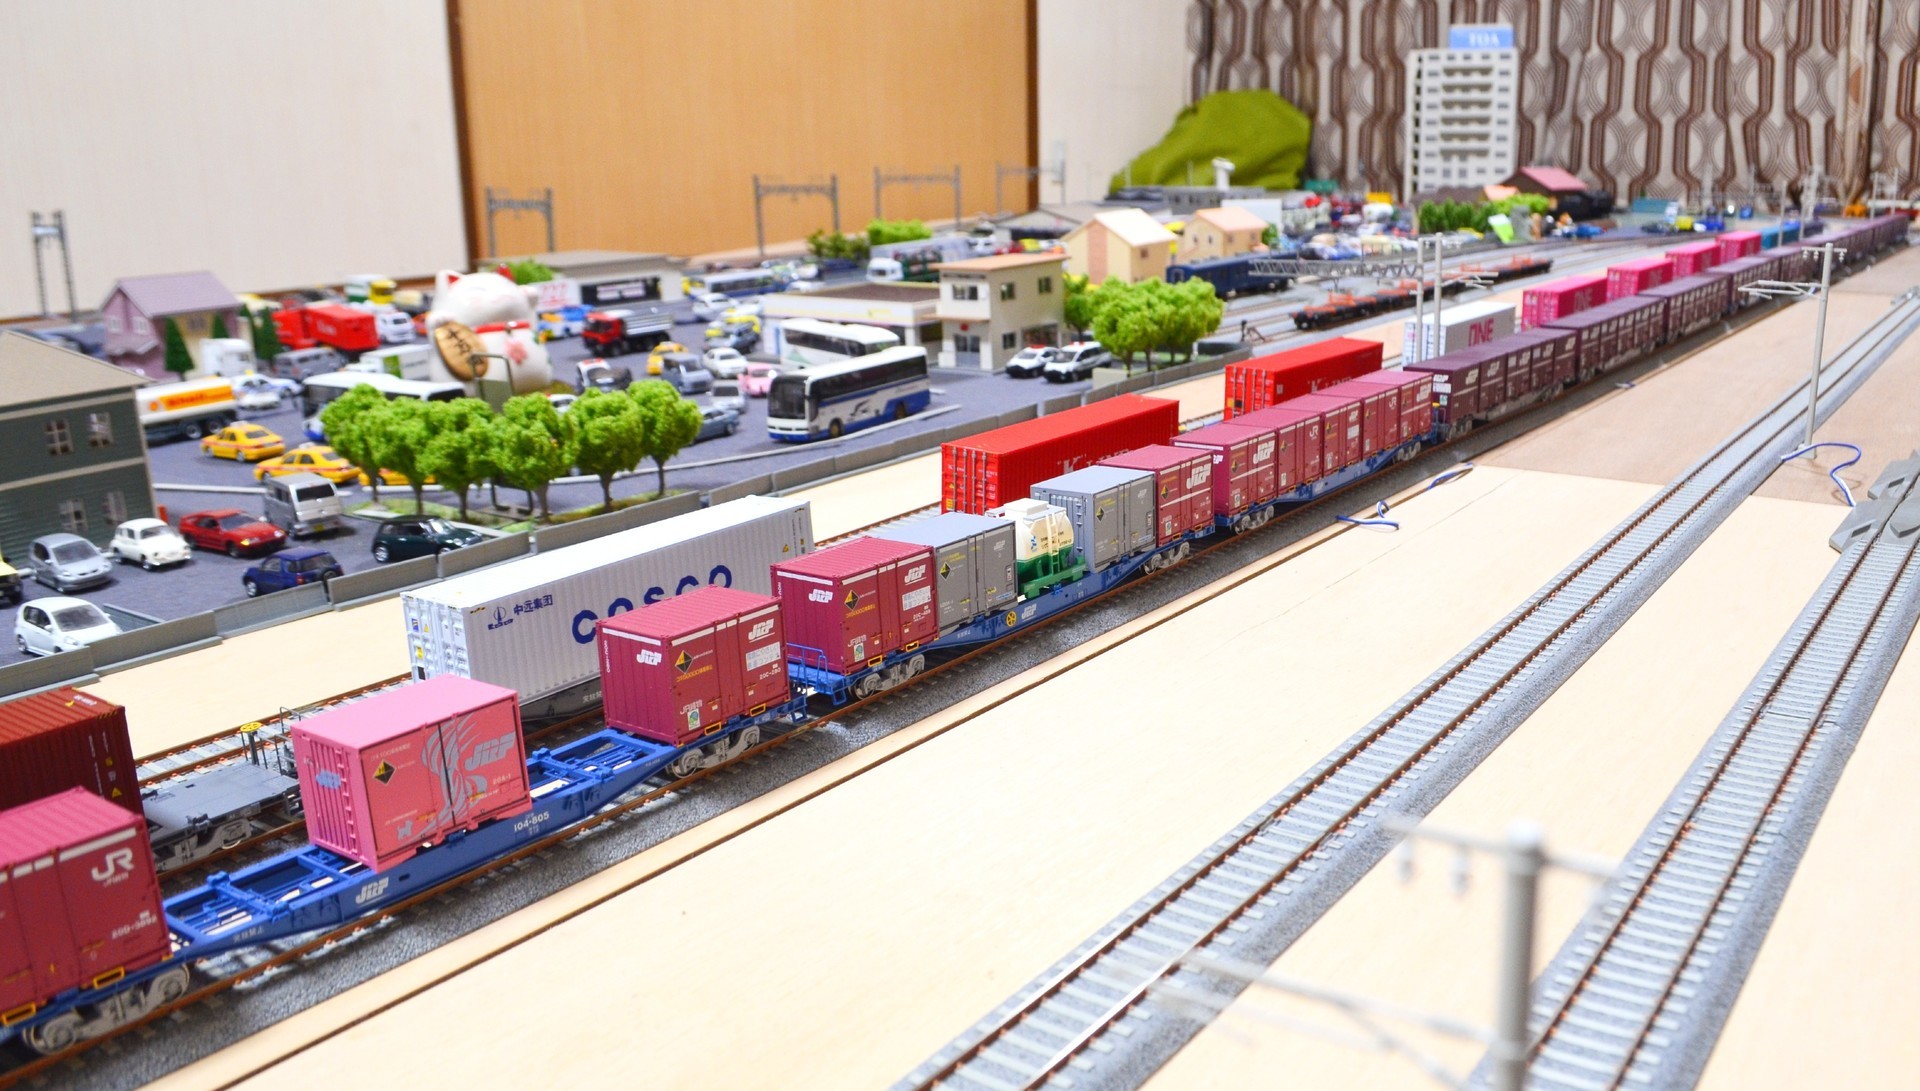 JR貨物 20Dコンテナ モデルアイコン 736A5、736A6、736A7: ゆるりと遊ぶ16番ゲージ鉄道模型